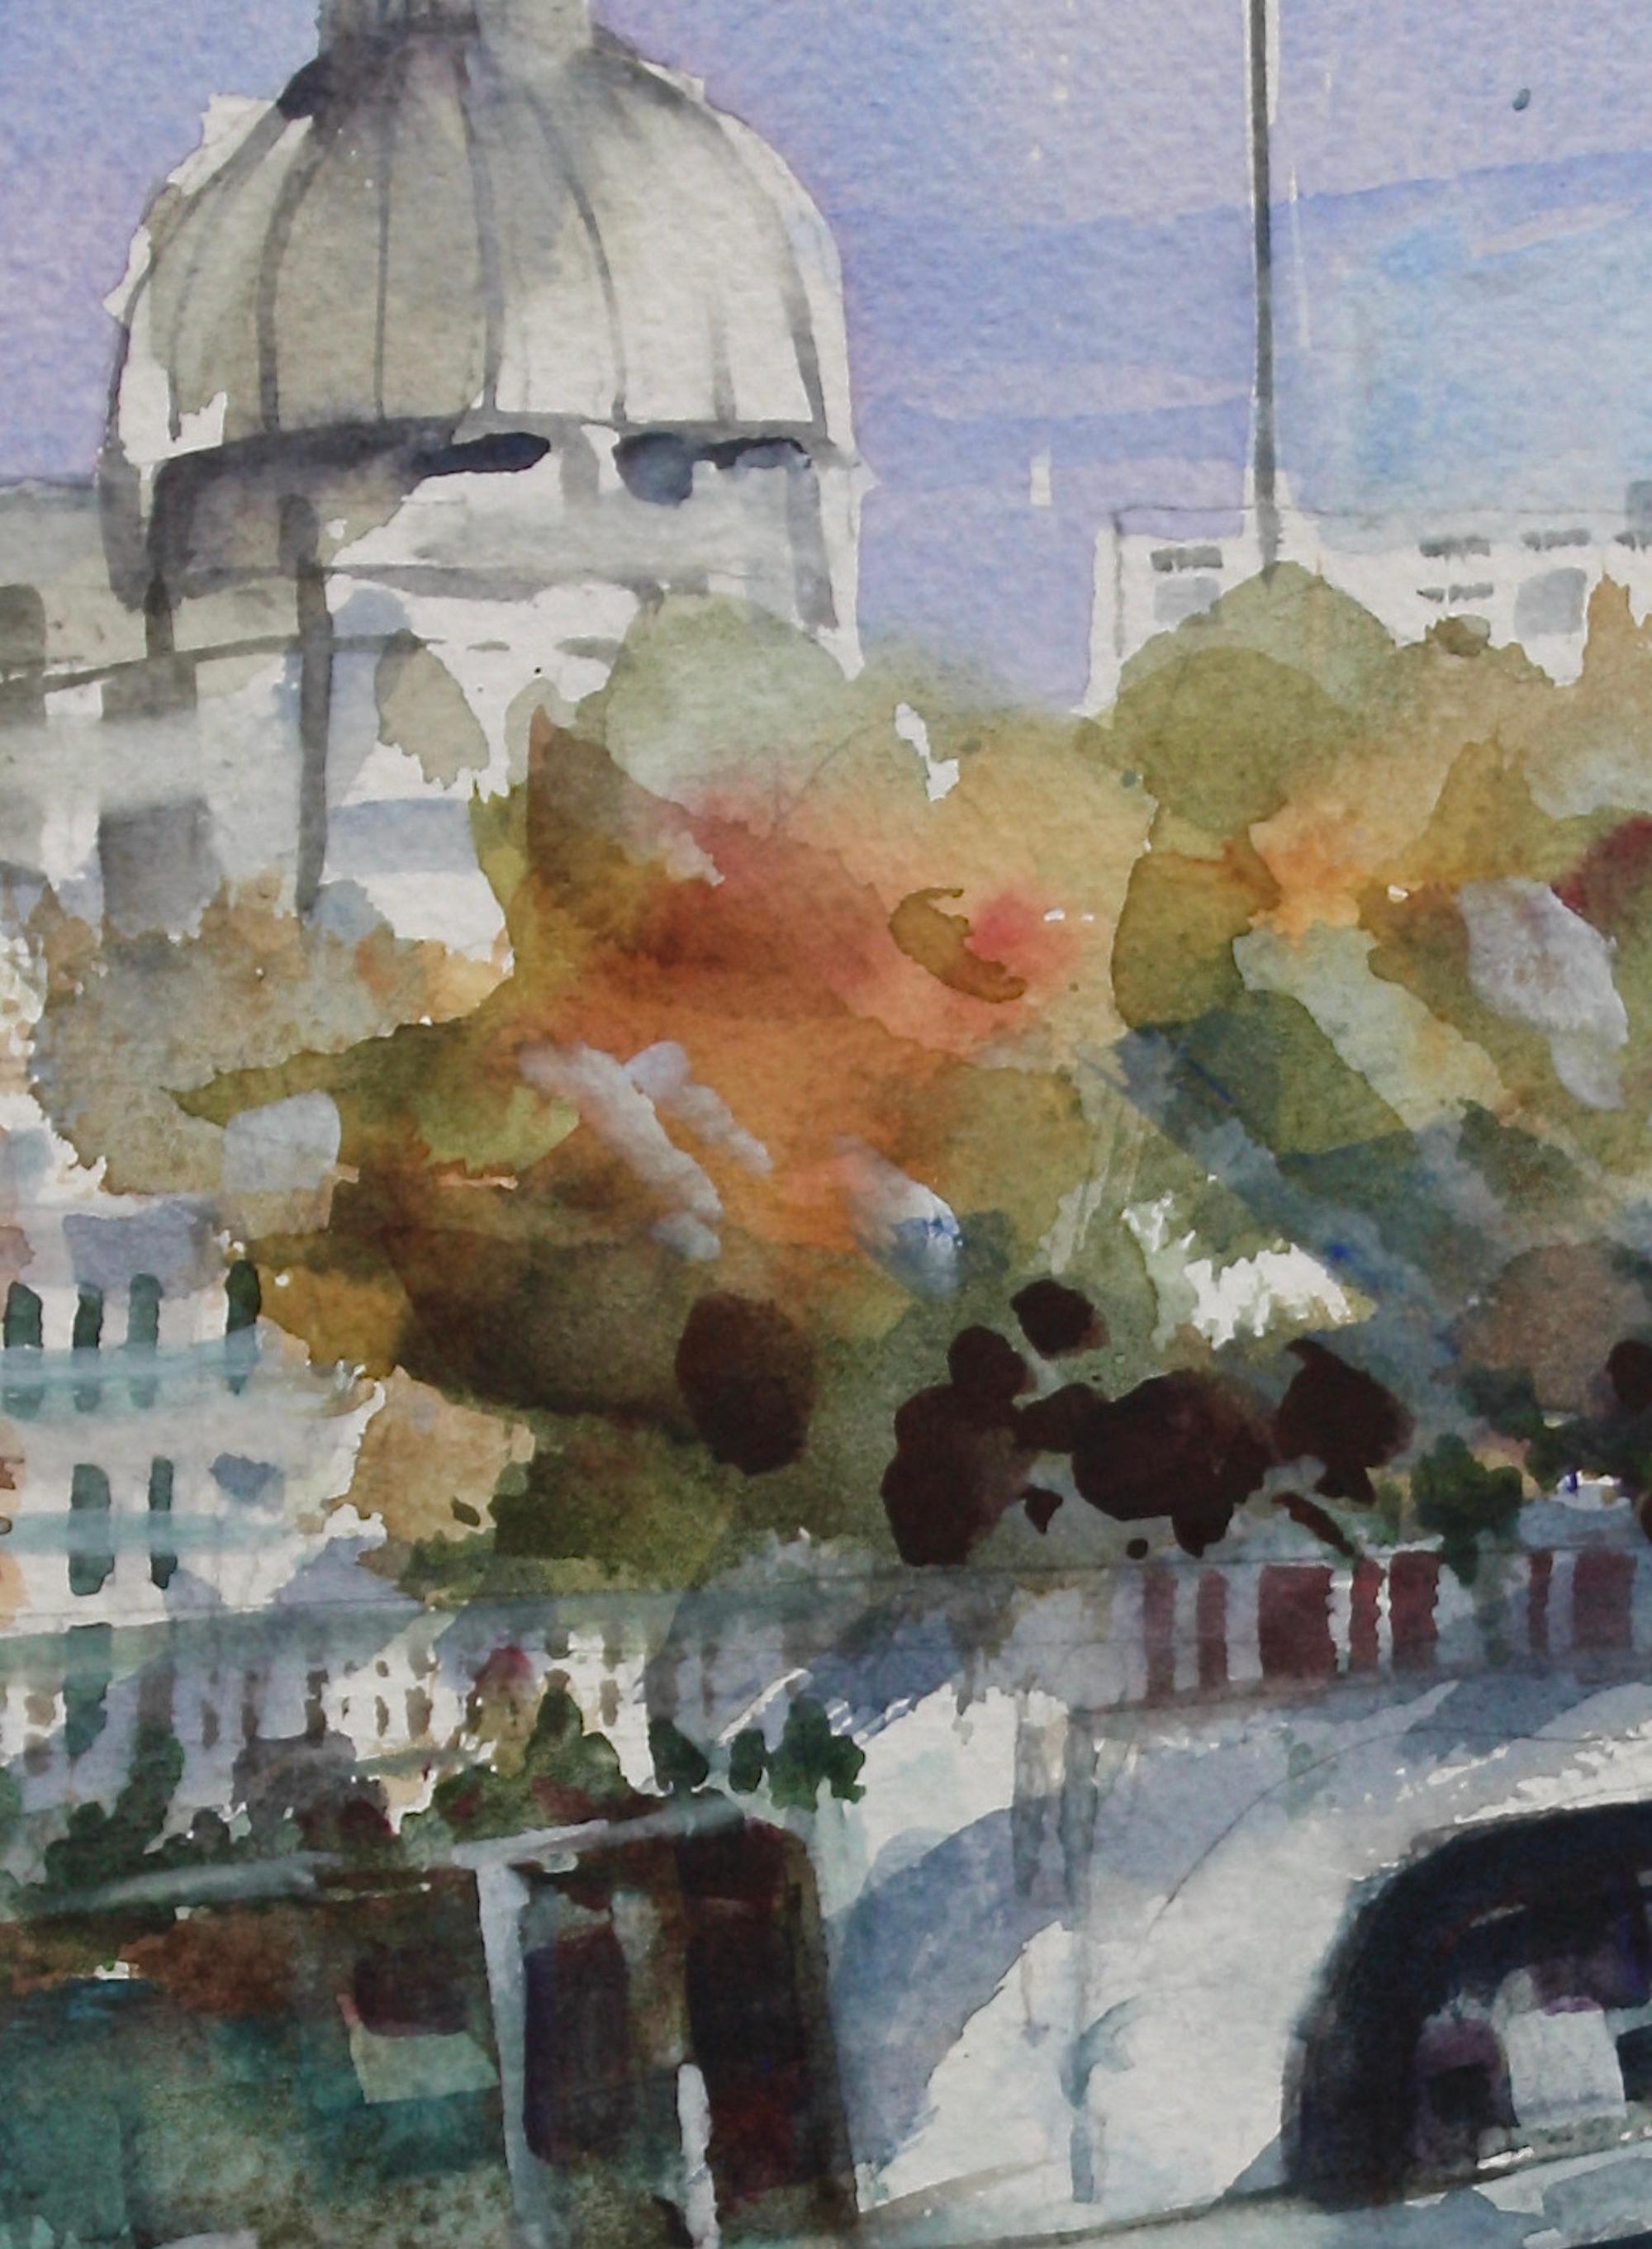 <p>Kommentare des Künstlers<br>Der Künstler Joe Giuffrida zeigt eine impressionistische Szene des berühmten Flusses Tiber. Von der Kurve aus hat man einen herrlichen Blick auf die schöne Kreuzung und die beeindruckende Architektur mit der